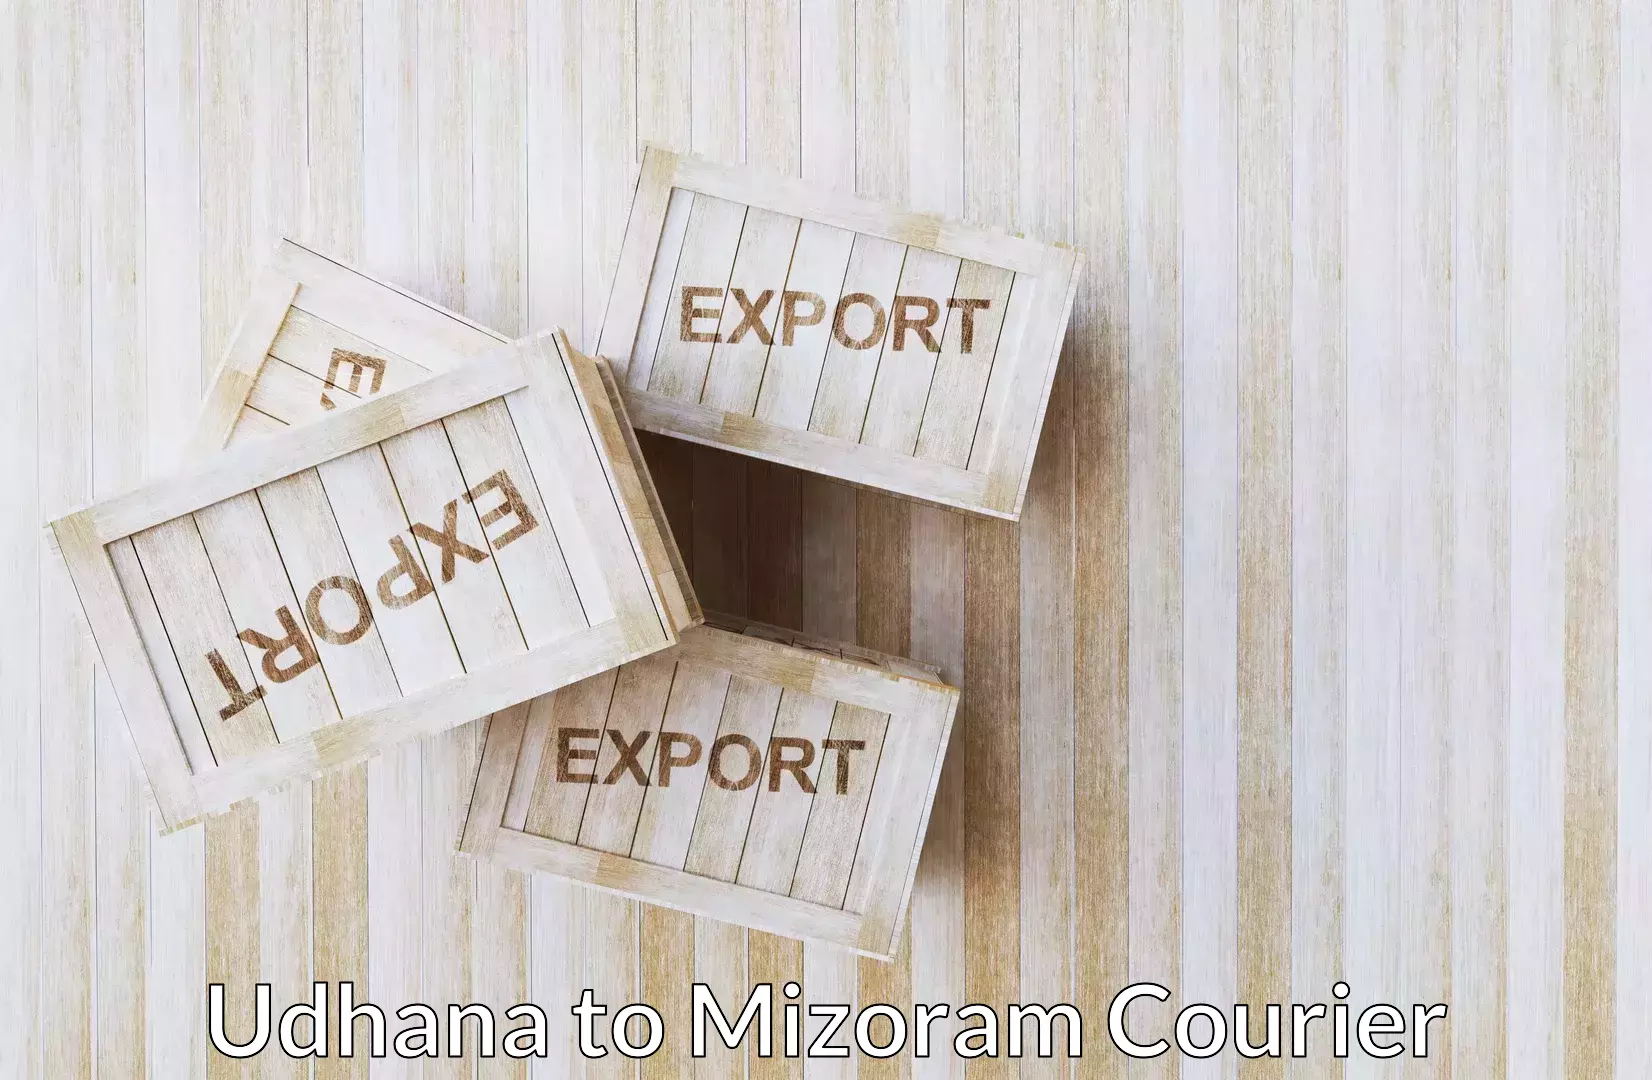 Baggage shipping schedule Udhana to Mizoram